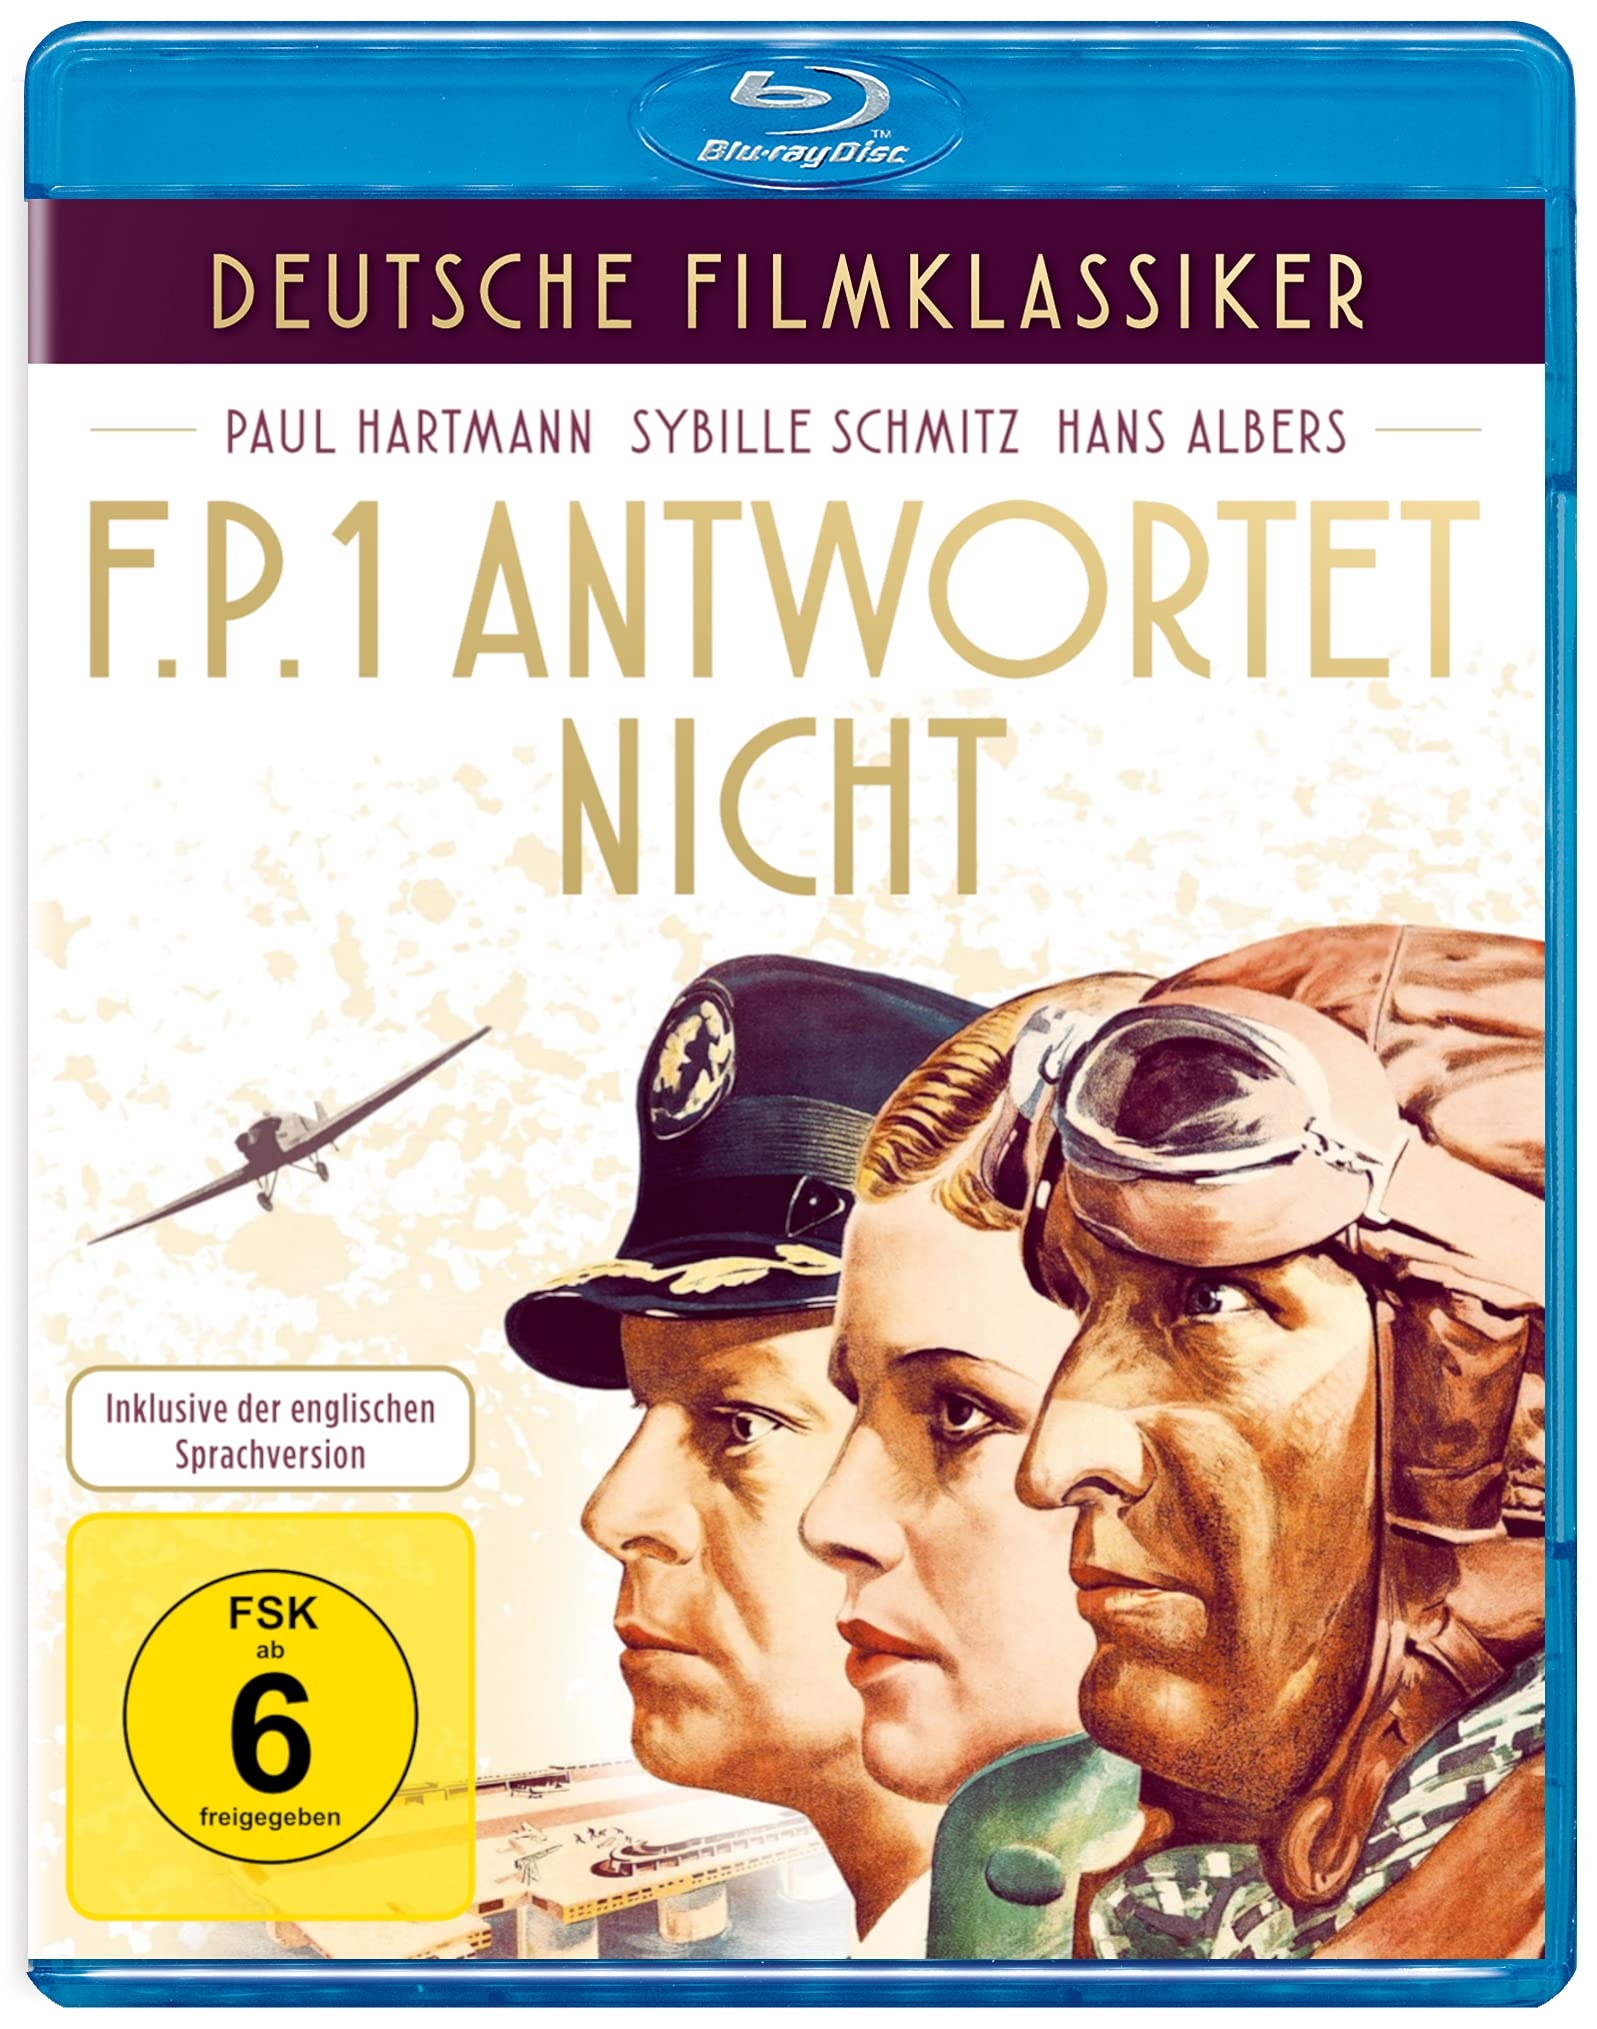 Deutsche Filmklassiker - F.P. 1 antwortet nicht [Blu-ray] (Neu differenzbesteuert)